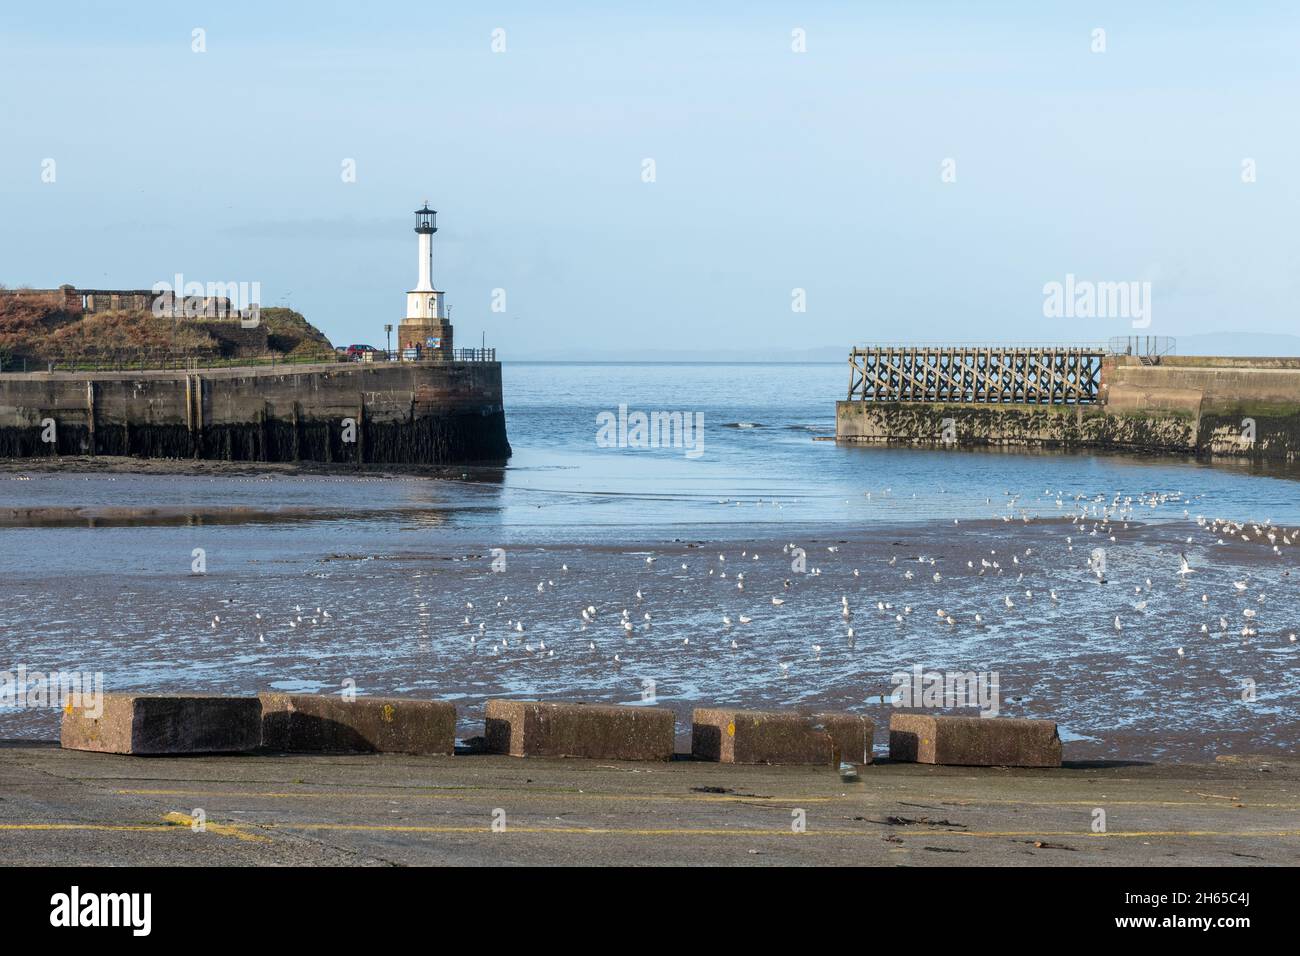 Le phare et l'entrée du port à Maryport, une ville côtière de Cumbria, Angleterre, Royaume-Uni Banque D'Images